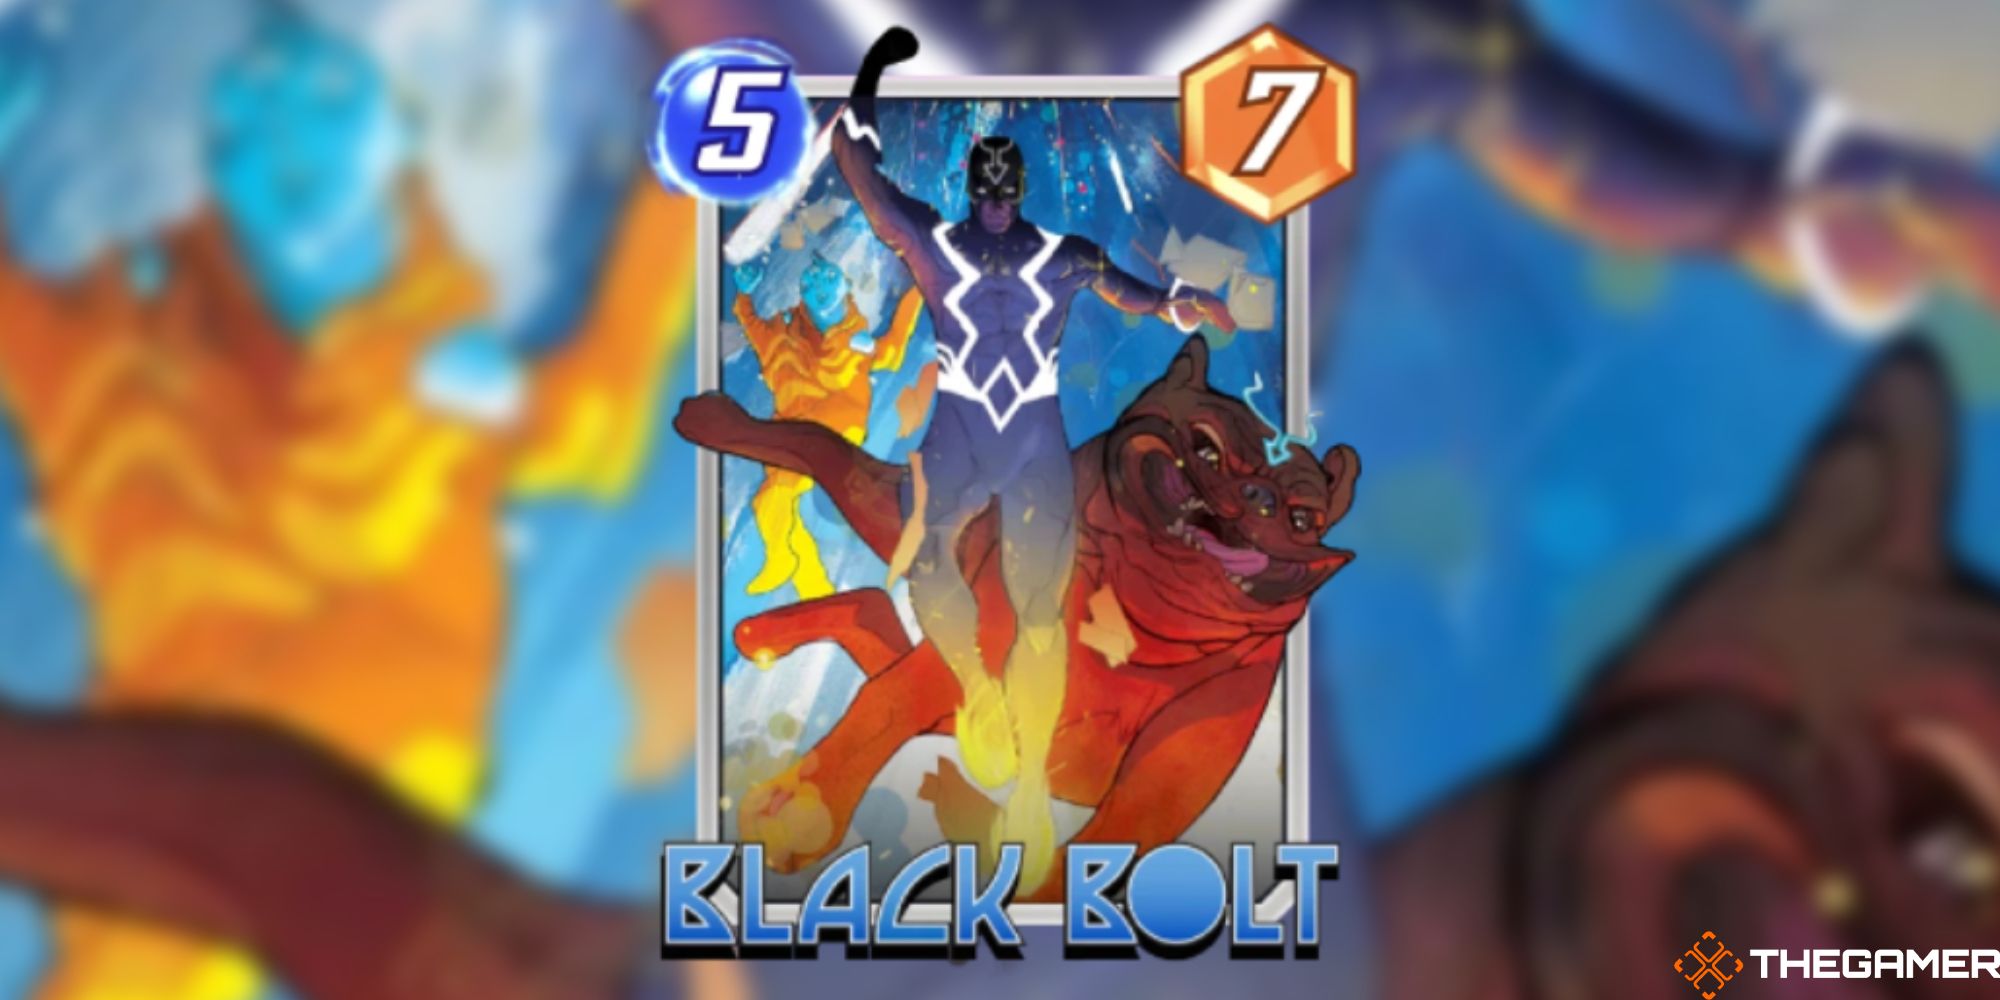 Marvel Snap - Black Bolt Variant on a blurred background